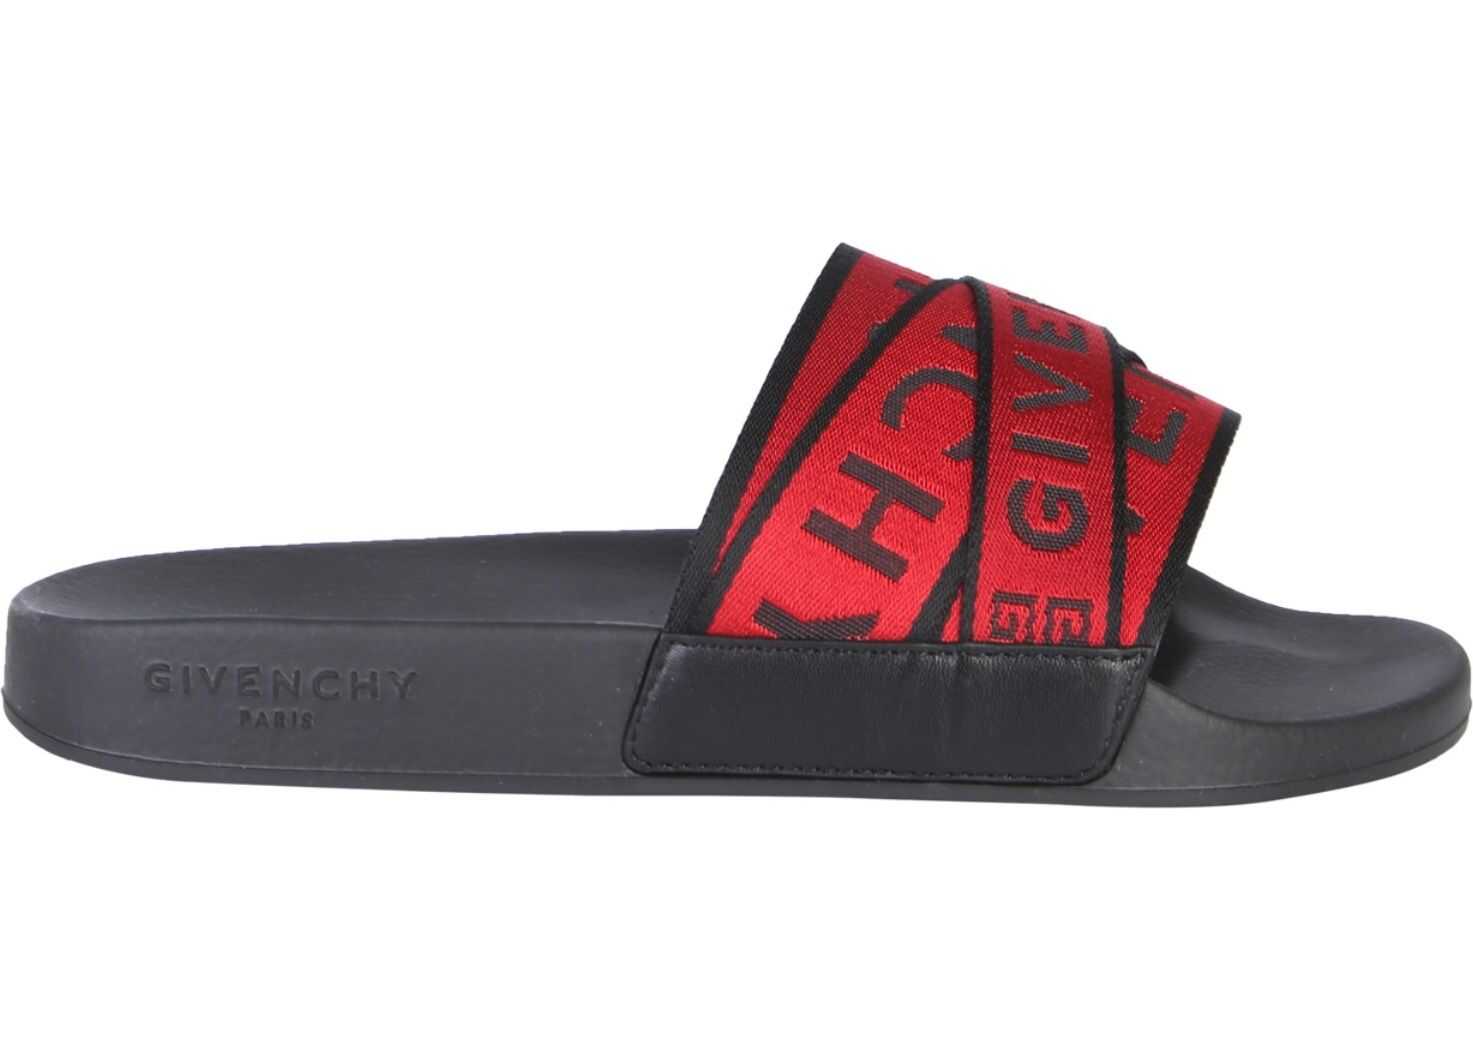 Givenchy Slide Sandals BLACK